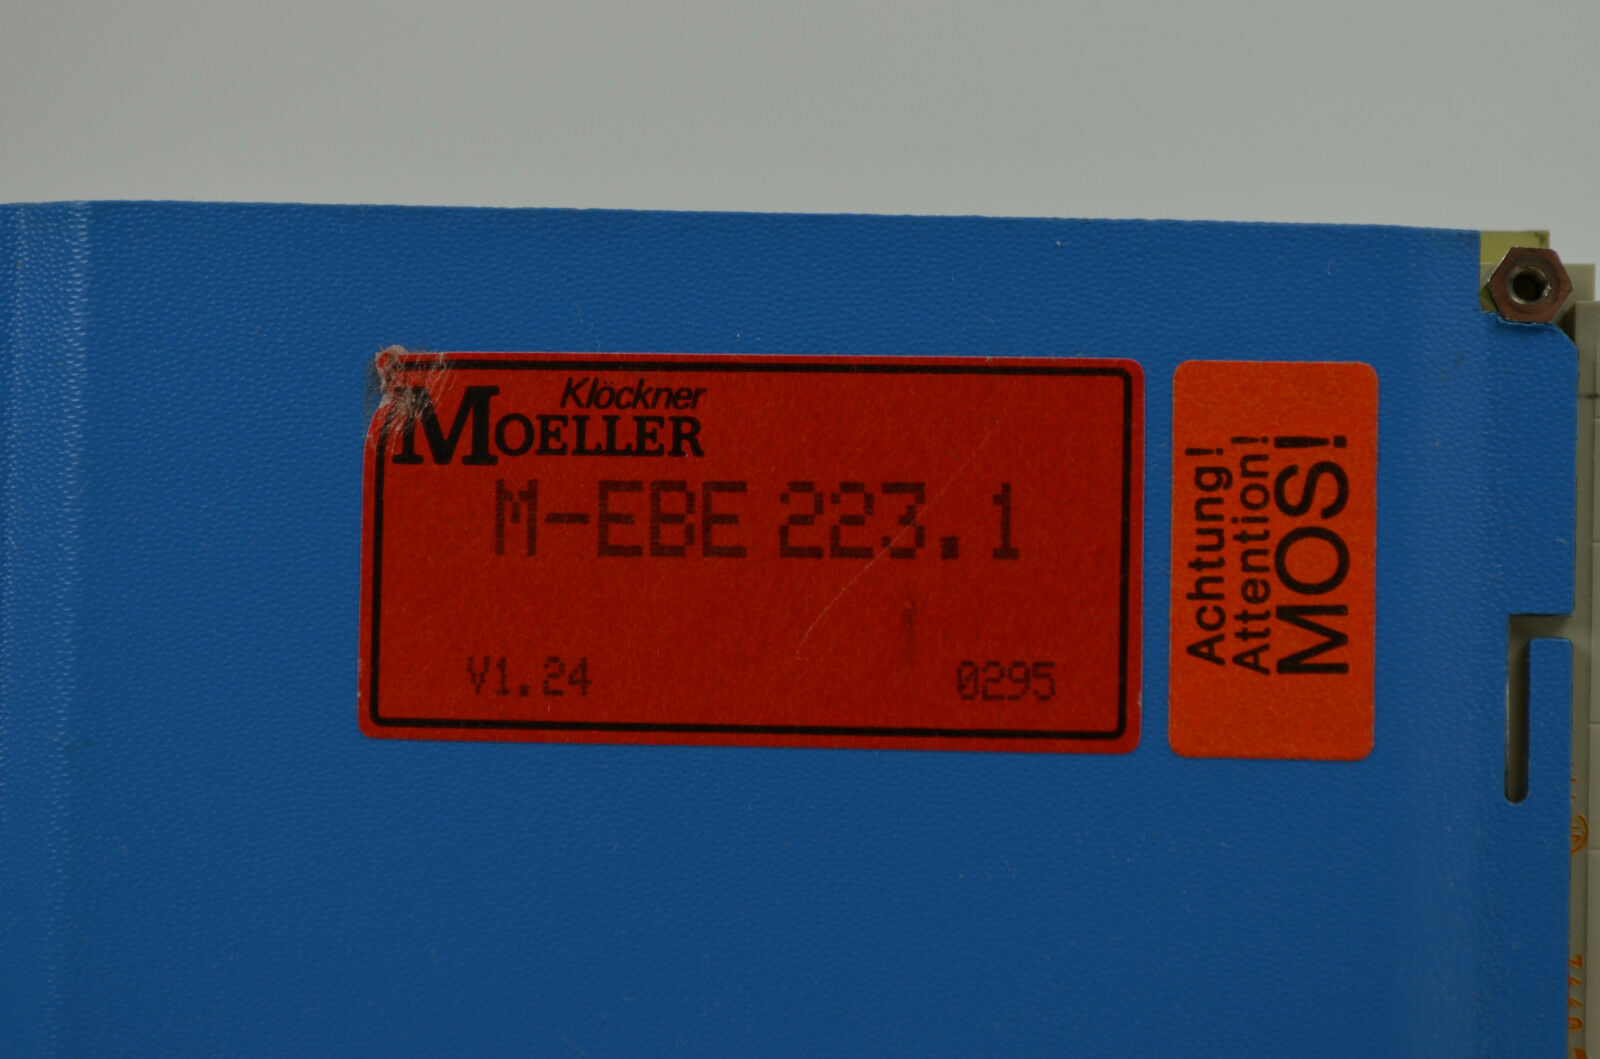 Klöckner Moeller M-EBE 223.1